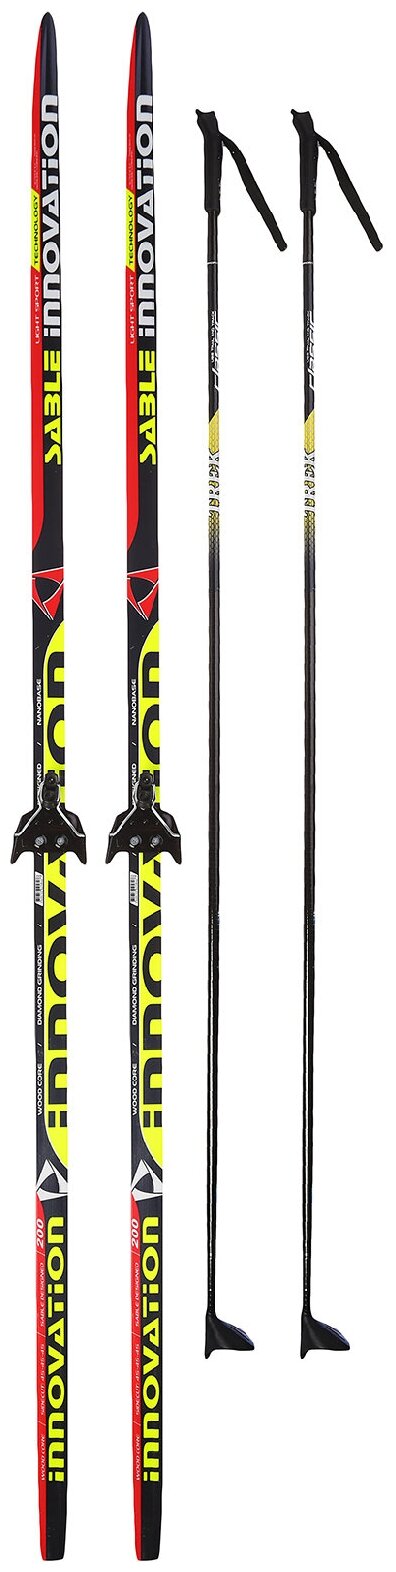 Комплект лыжный бренд ЦСТ, длина лыж 200 см, длина палок 160 см, крепление NN75 мм, цвет микс